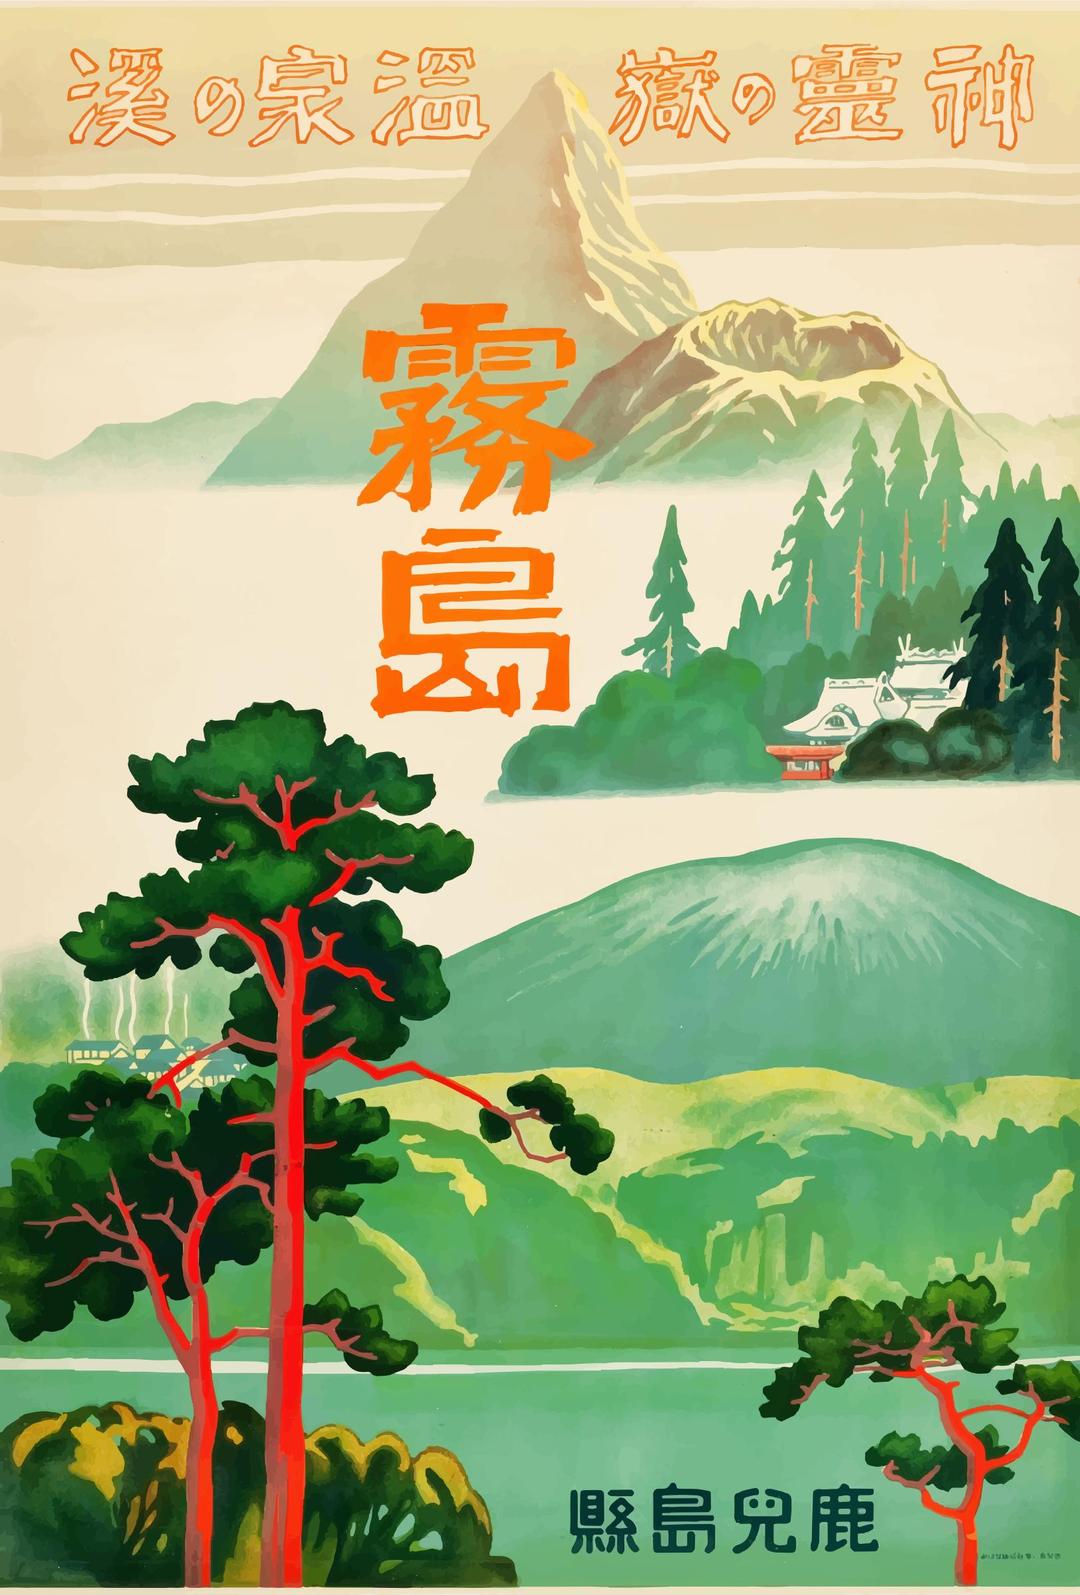 Vintage Travel Poster Japan 1930s 2 png transparent